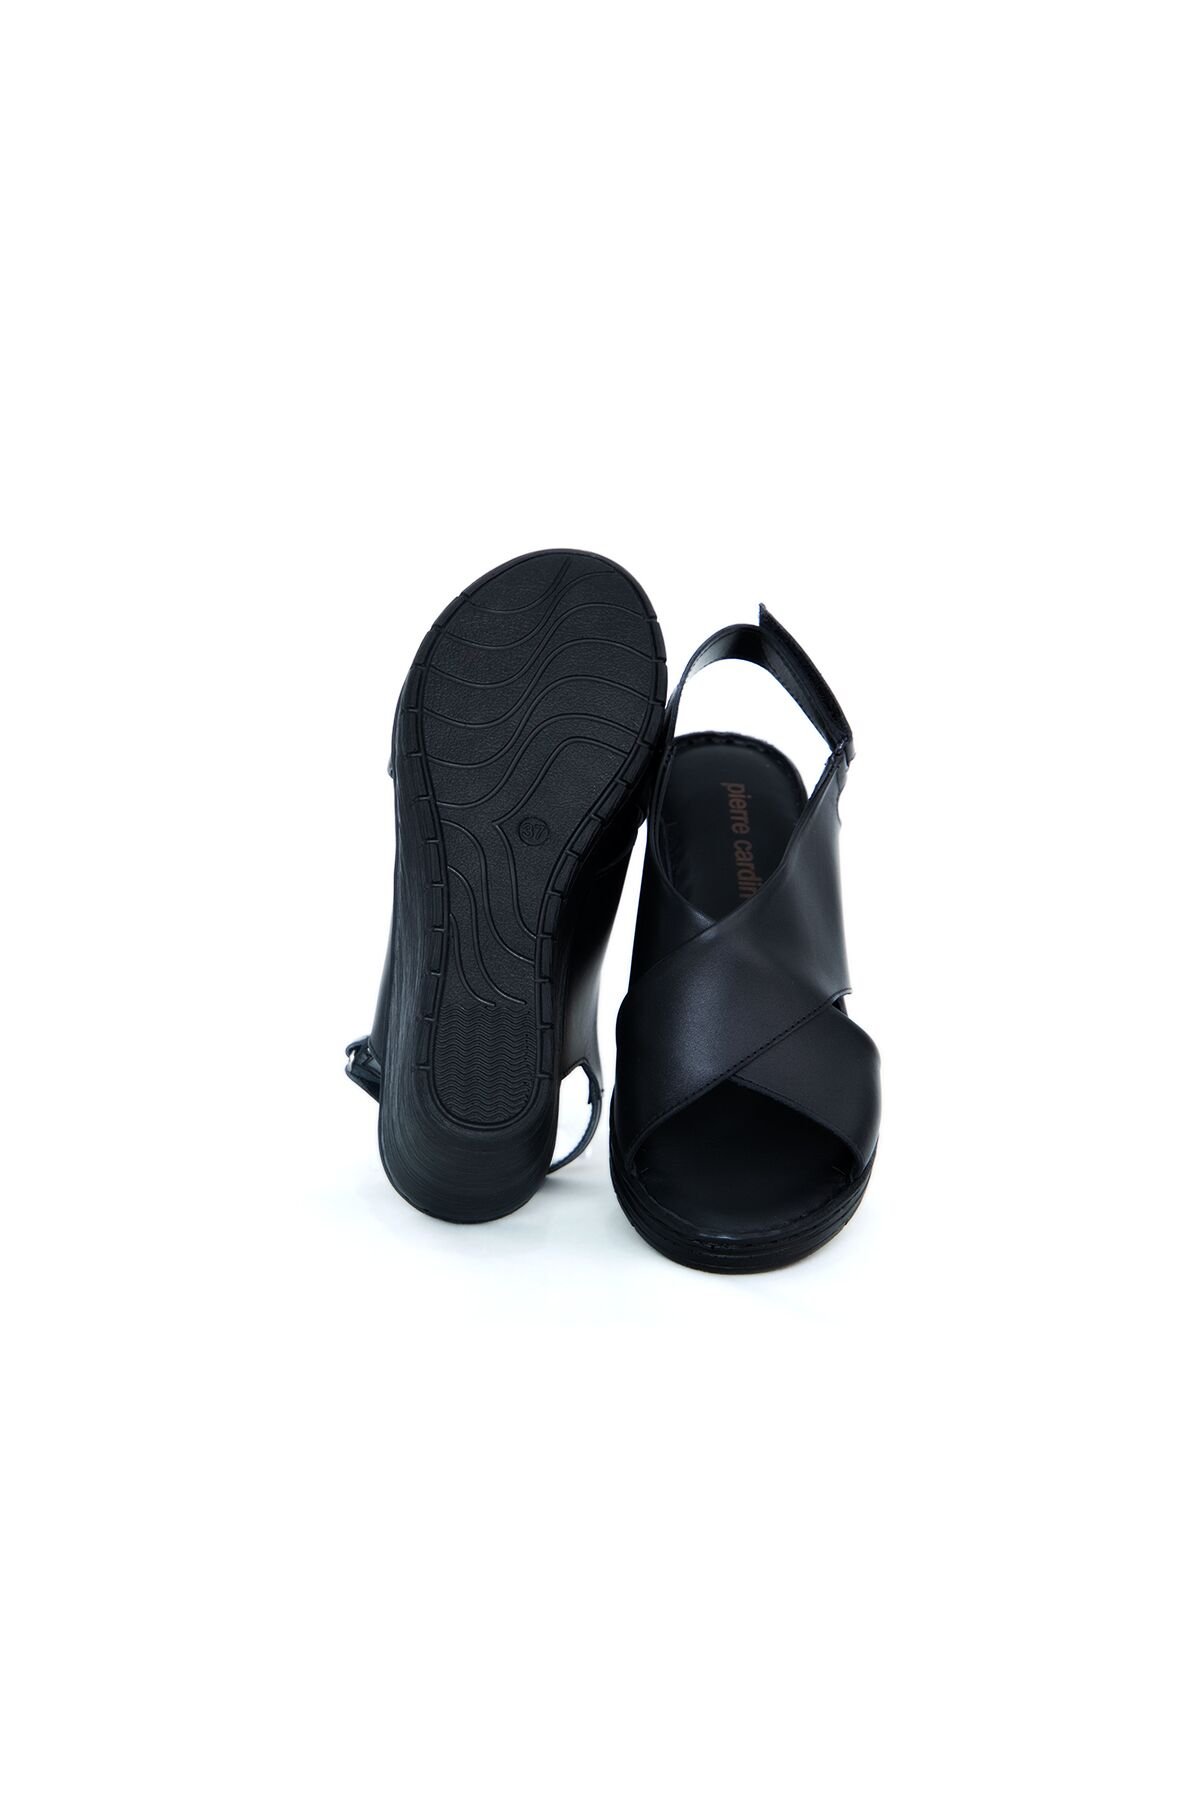 Kadın Ortopedik Sandalet PC-6907-Siyah - 6